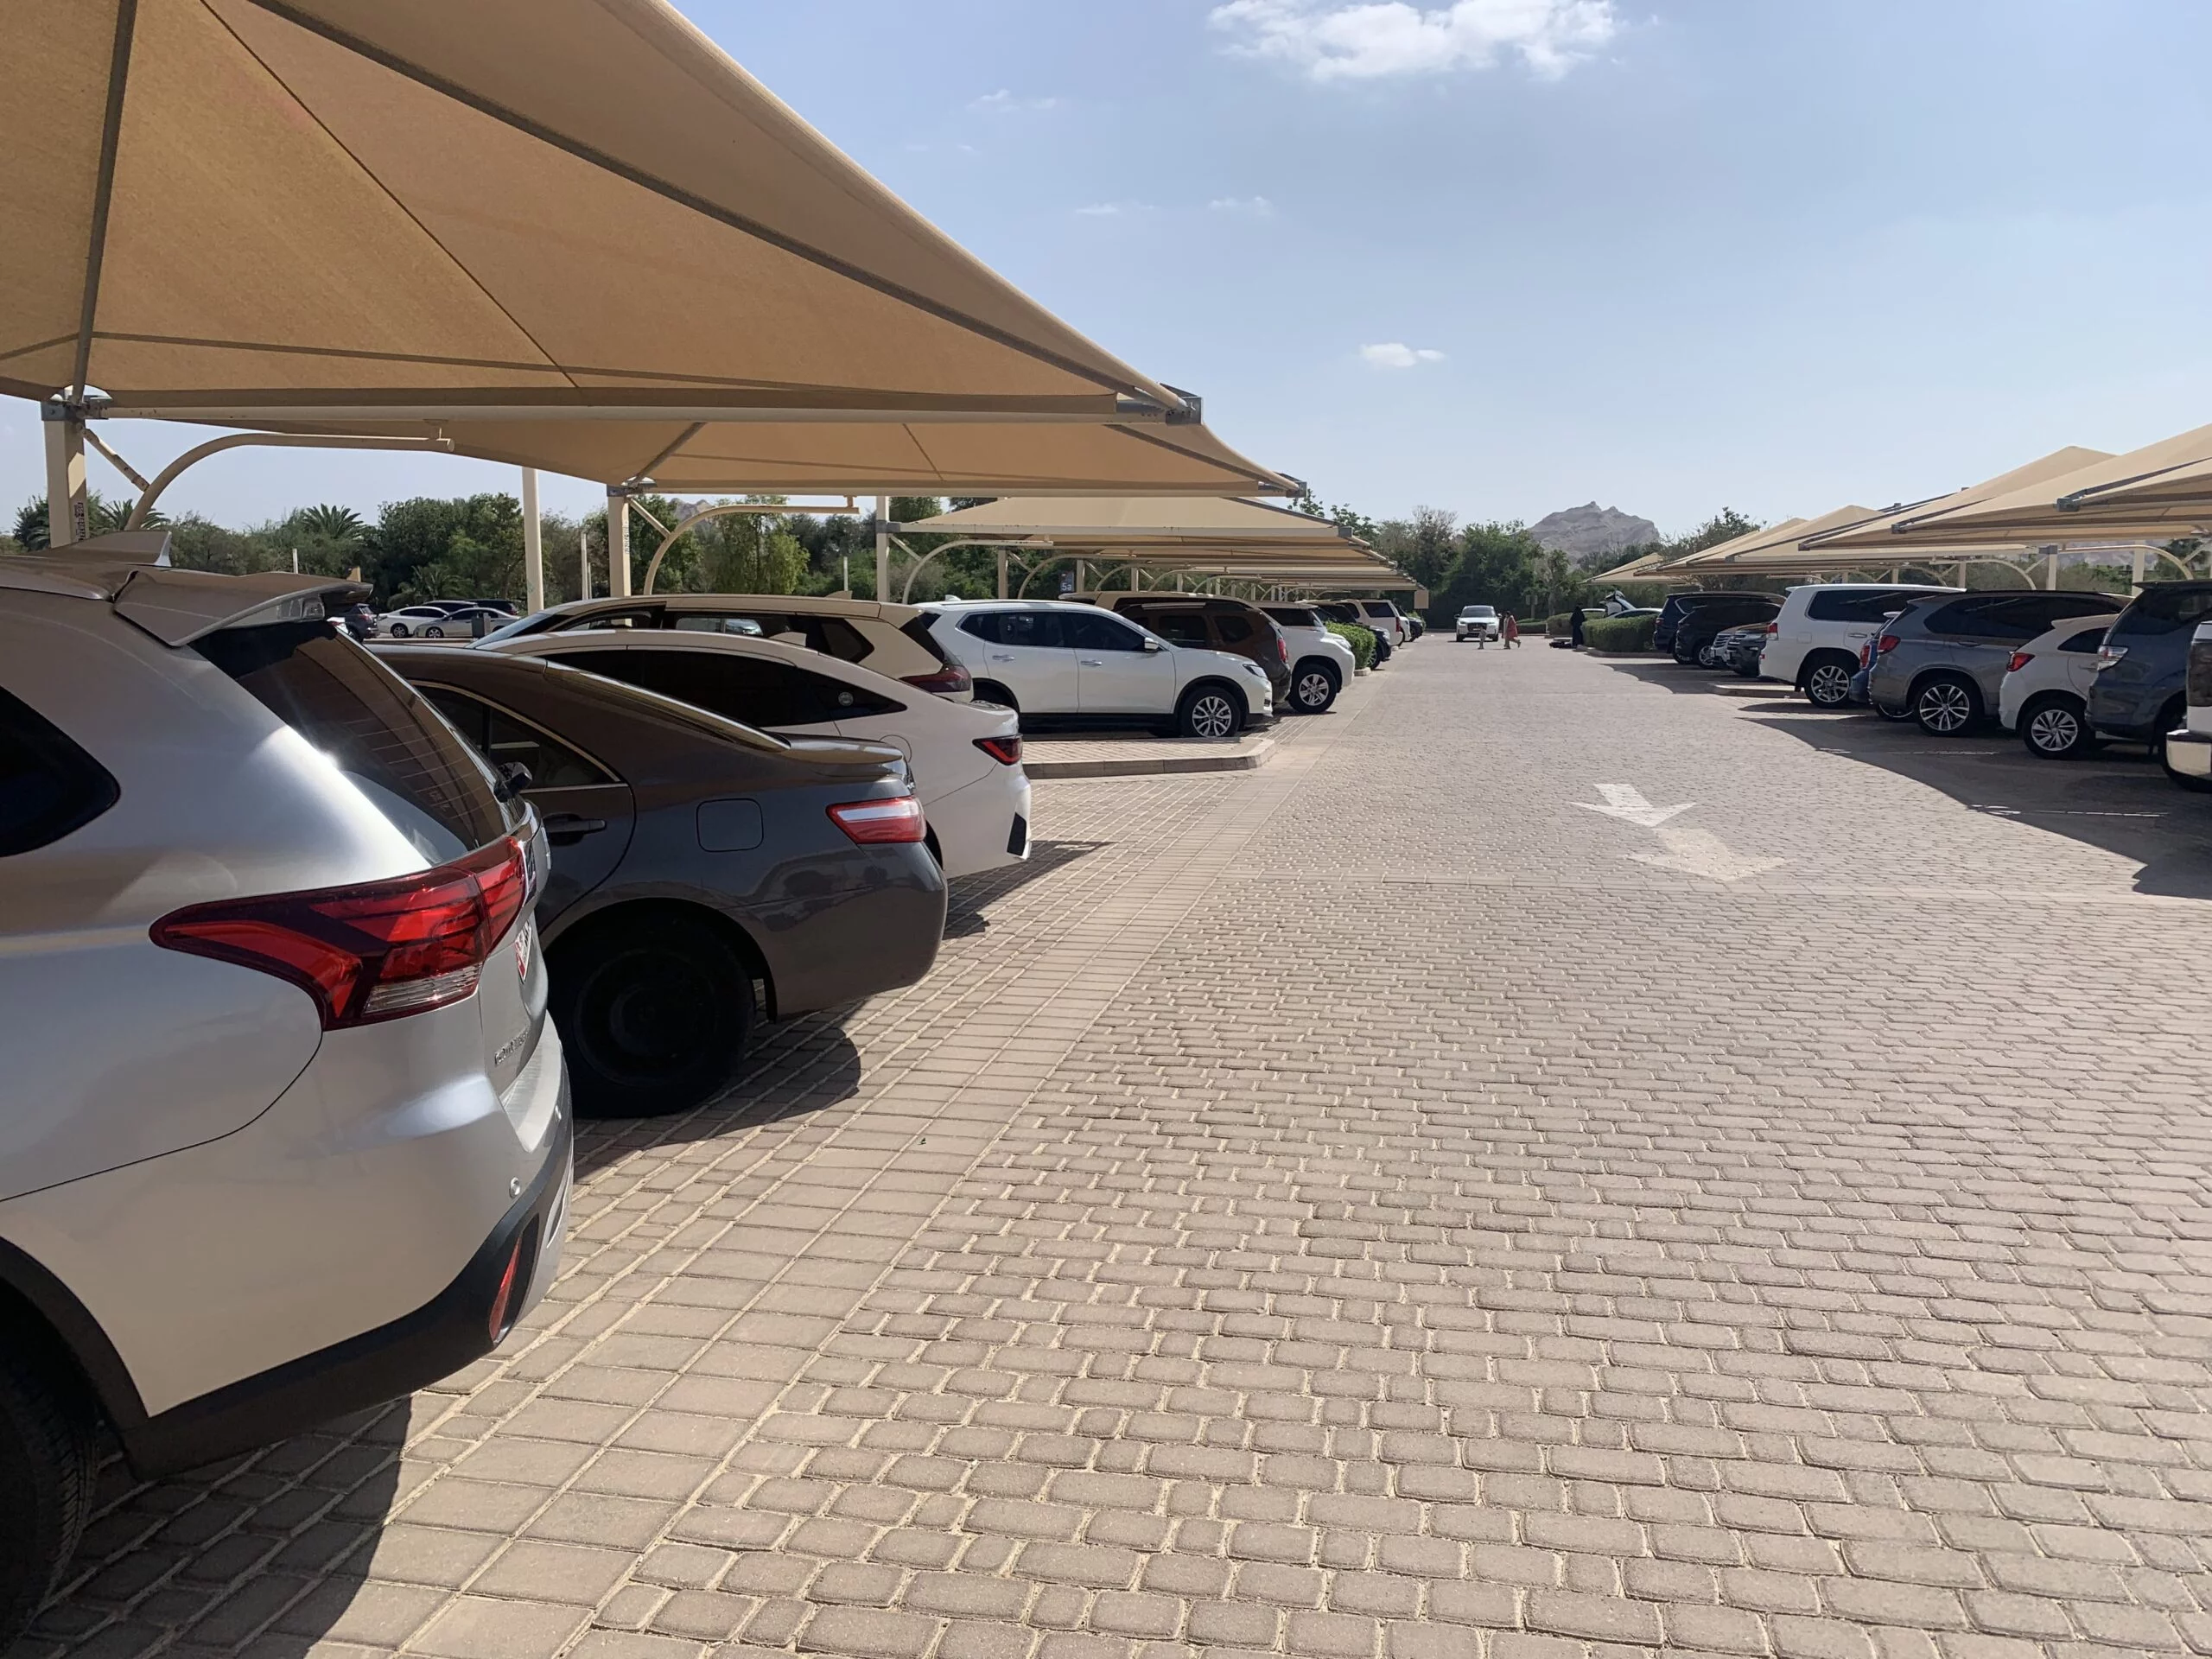 Free Parking - Al Ain Zoo